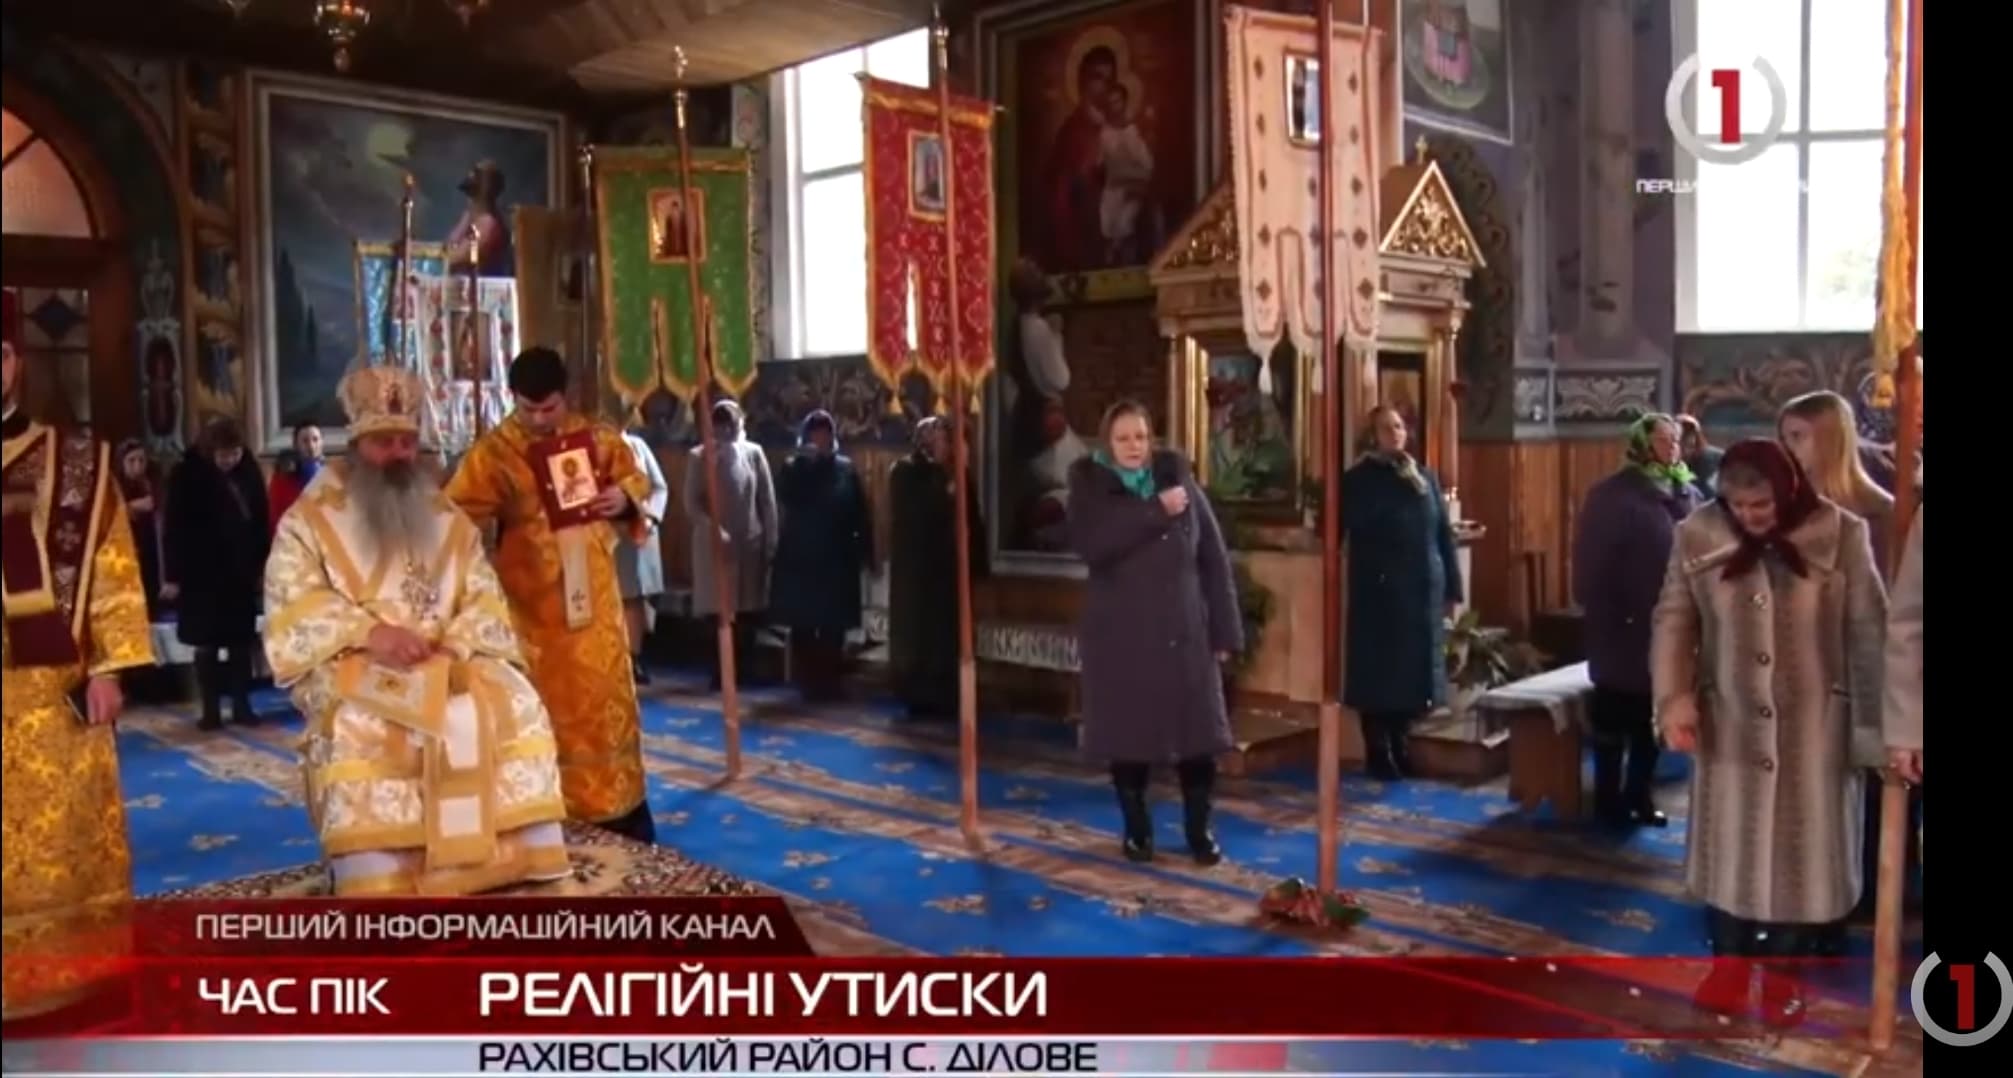 Релігійні утиски: православну громаду на Рахівщині хочуть позбавити храму (ВІДЕО)